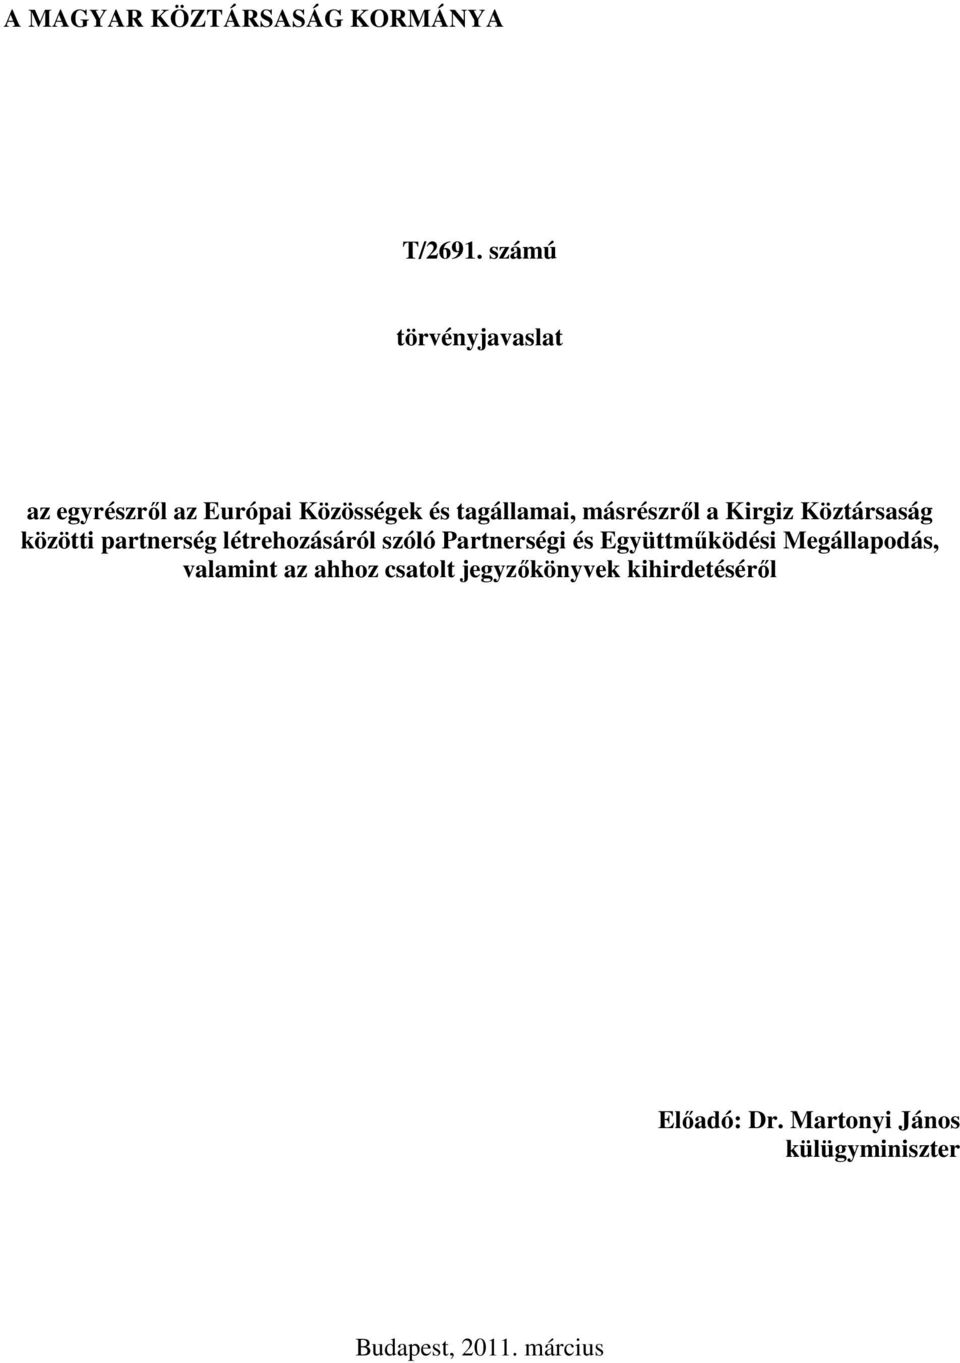 Kirgiz Köztársaság közötti partnerség létrehozásáról szóló Partnerségi és